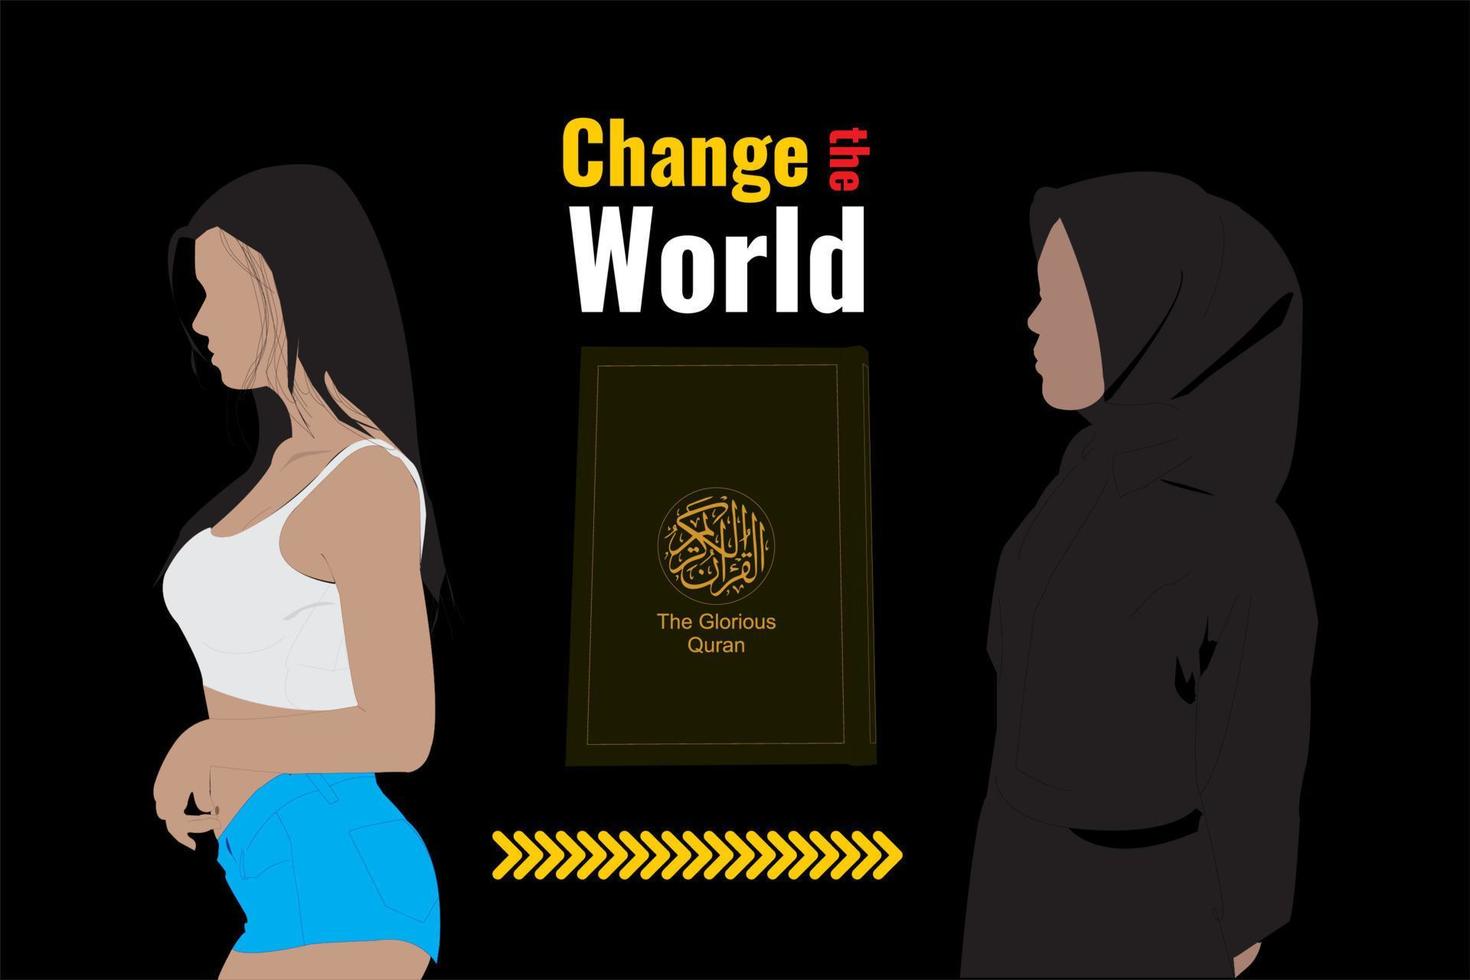 changer le monde par le coran une fille moderne a changé après avoir compris le coran et commencé à porter le hijab vecteur